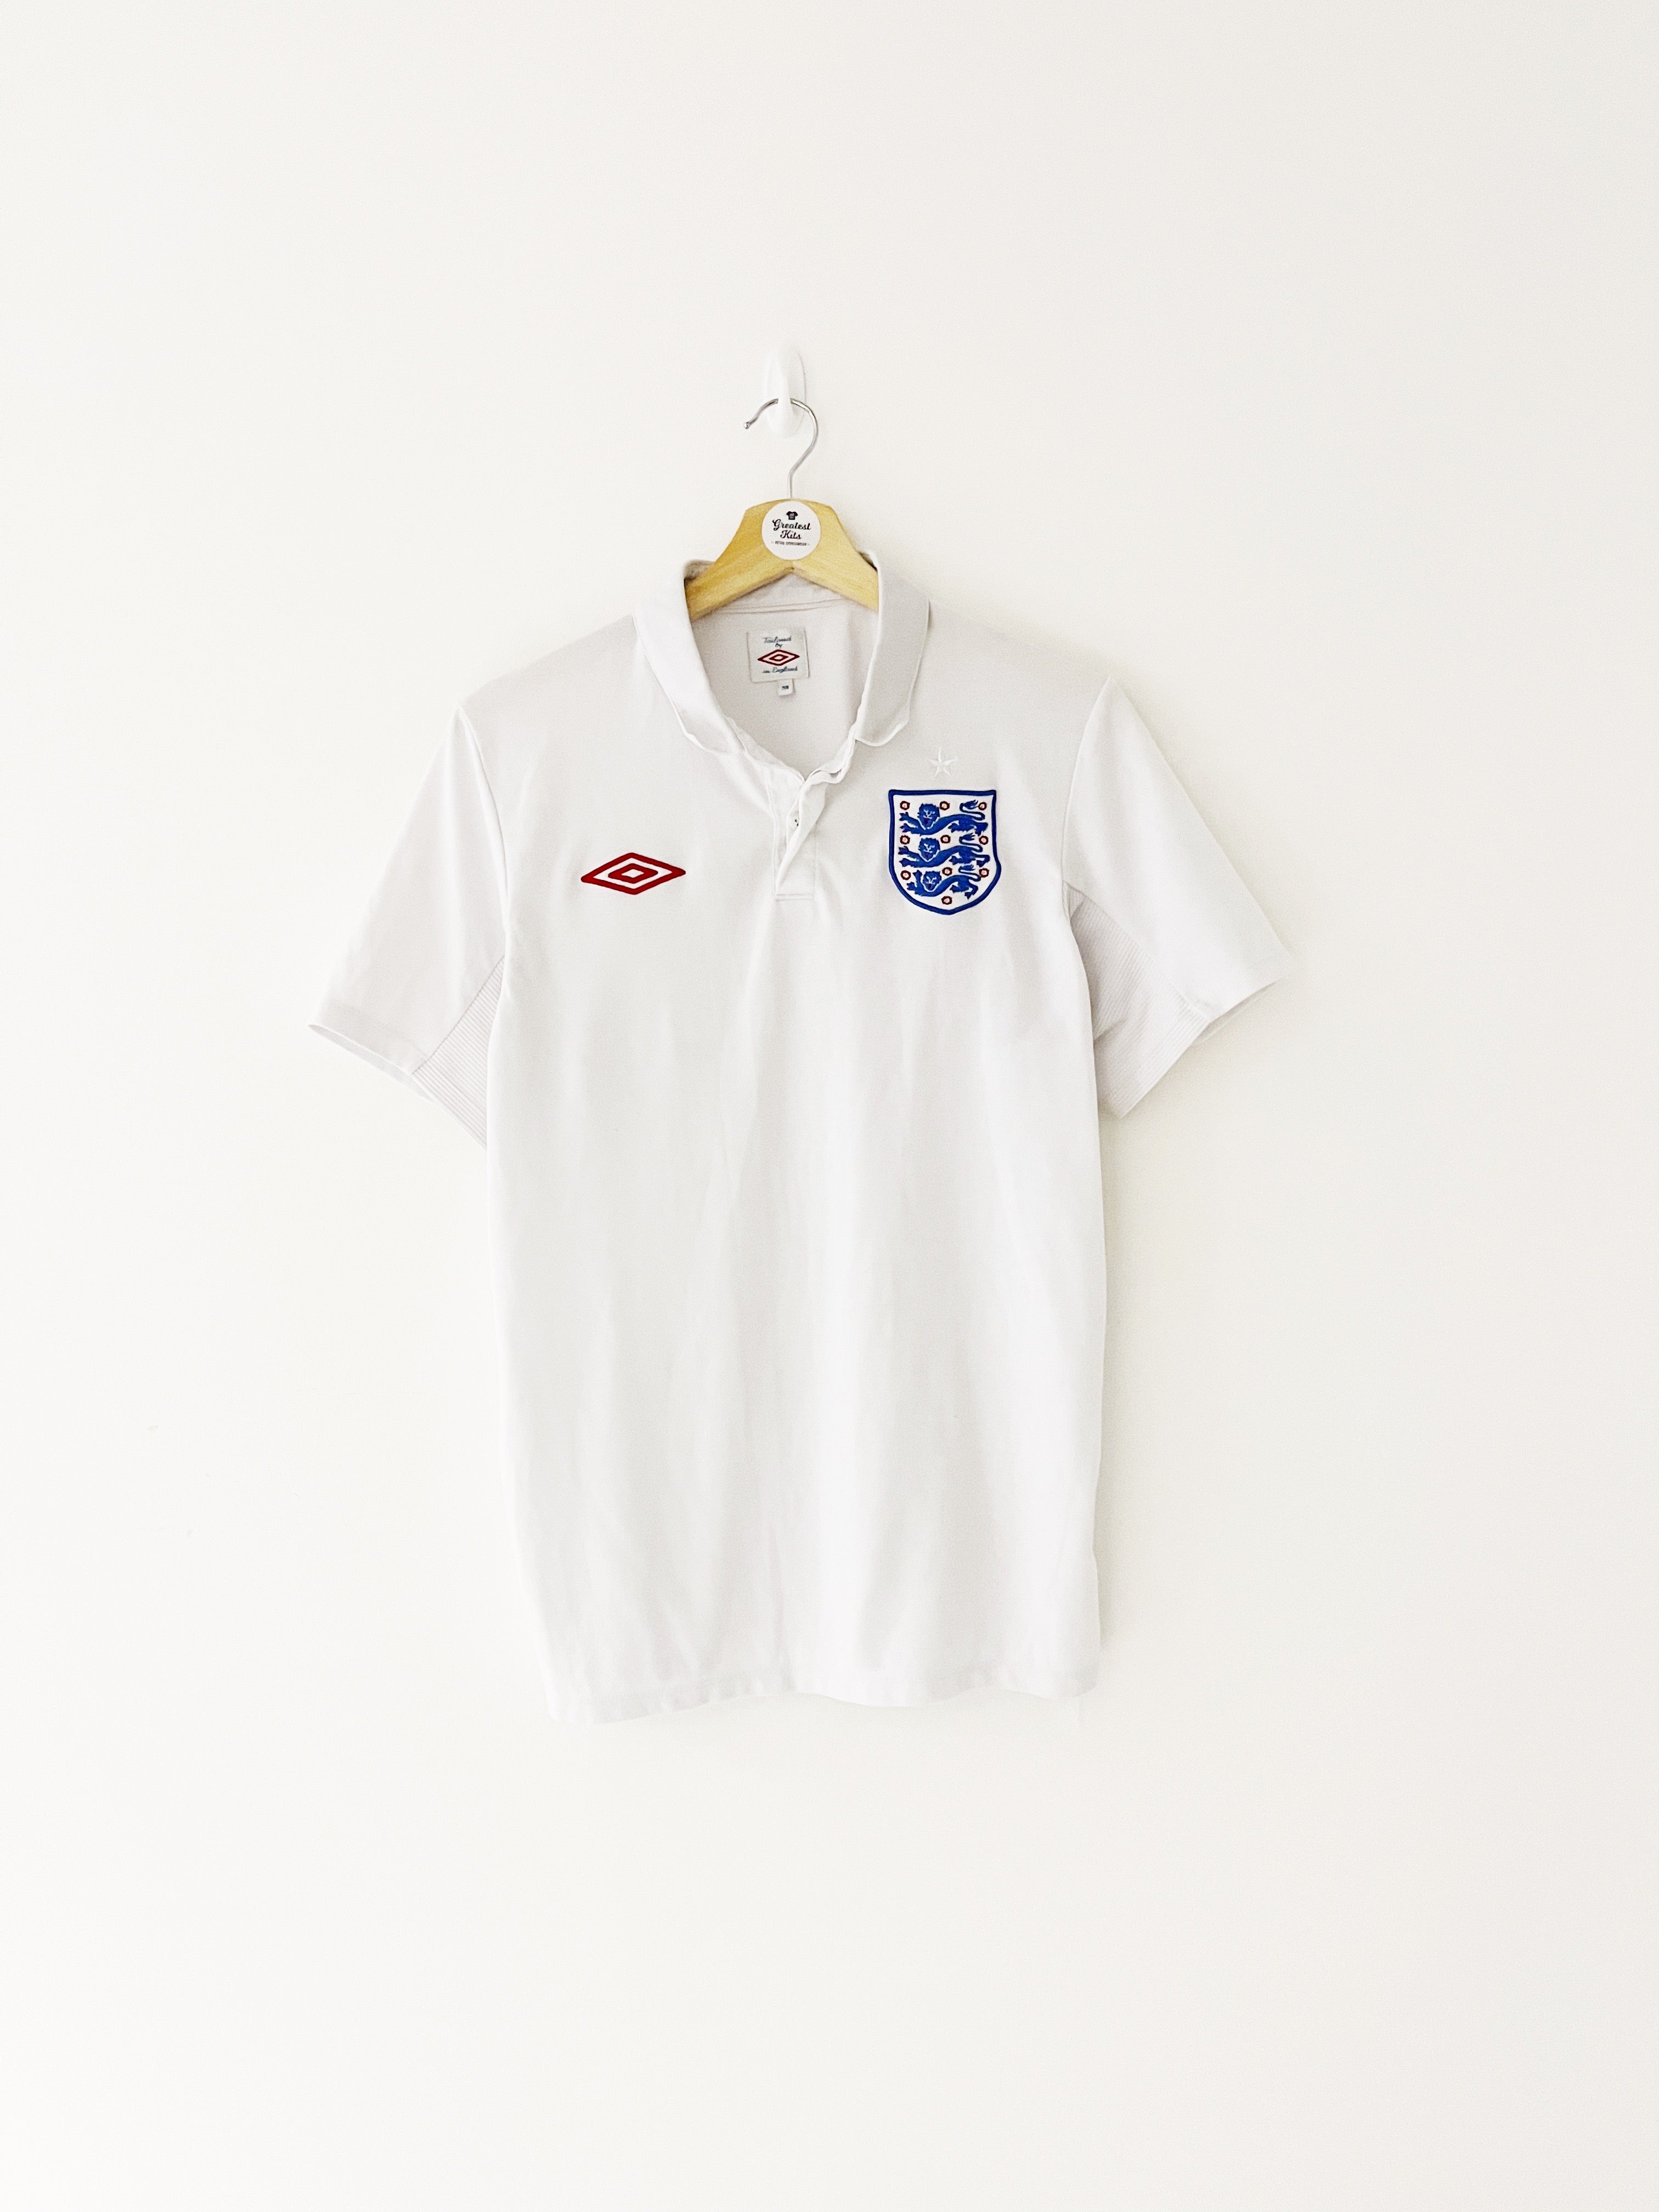 2010/11 England Home Shirt (M) 9/10